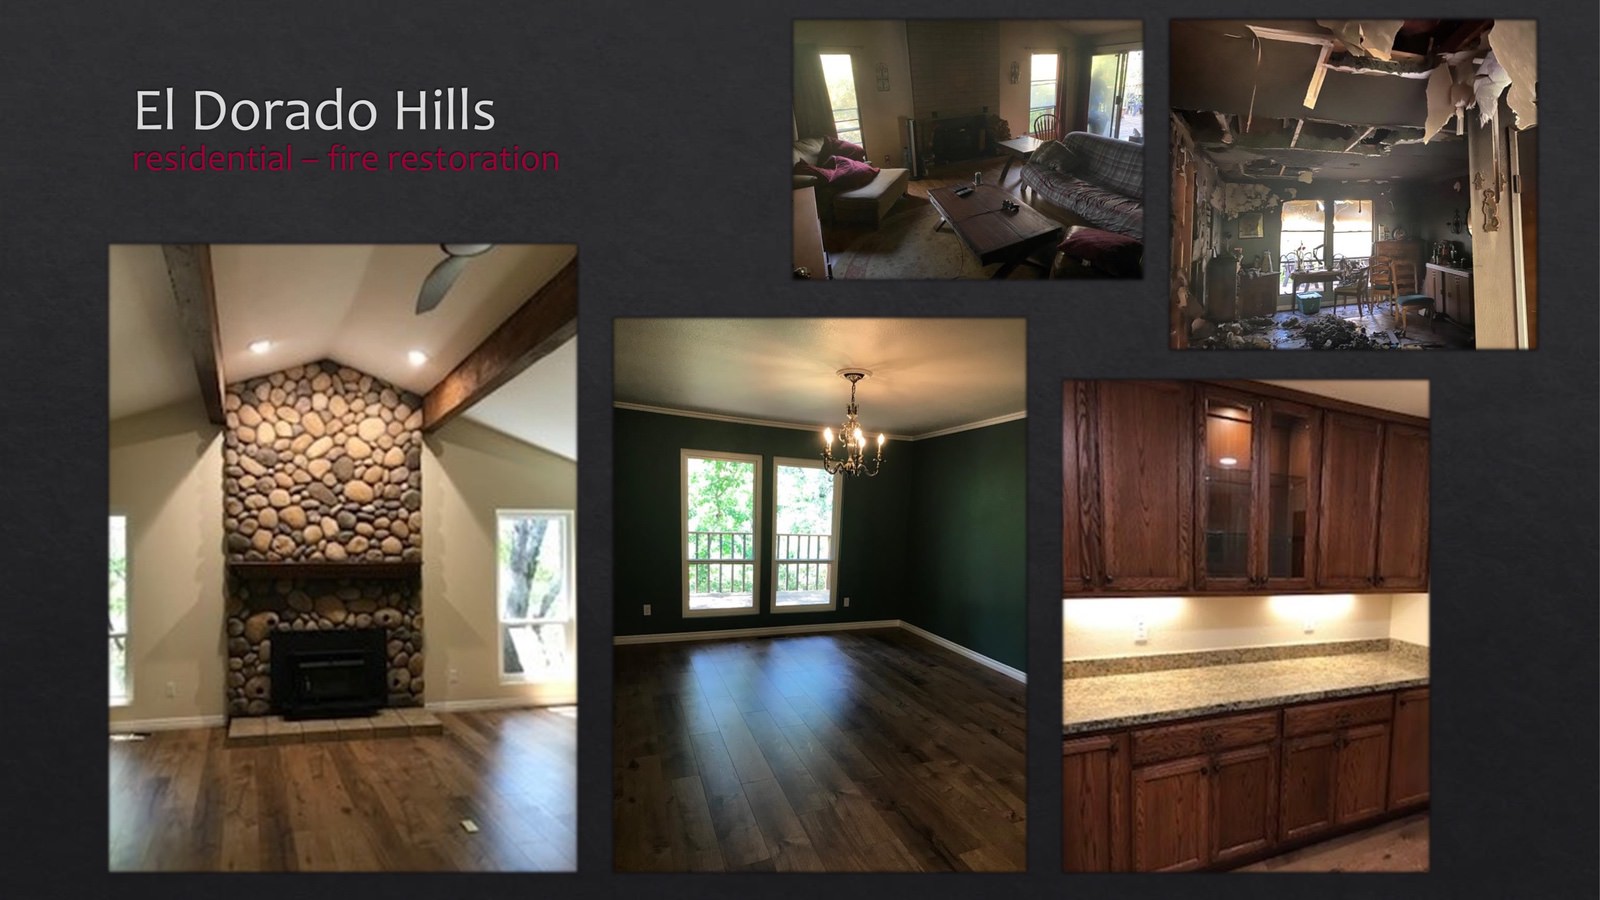 El Dorado Hills Residential fire restoration - living room - lightbox